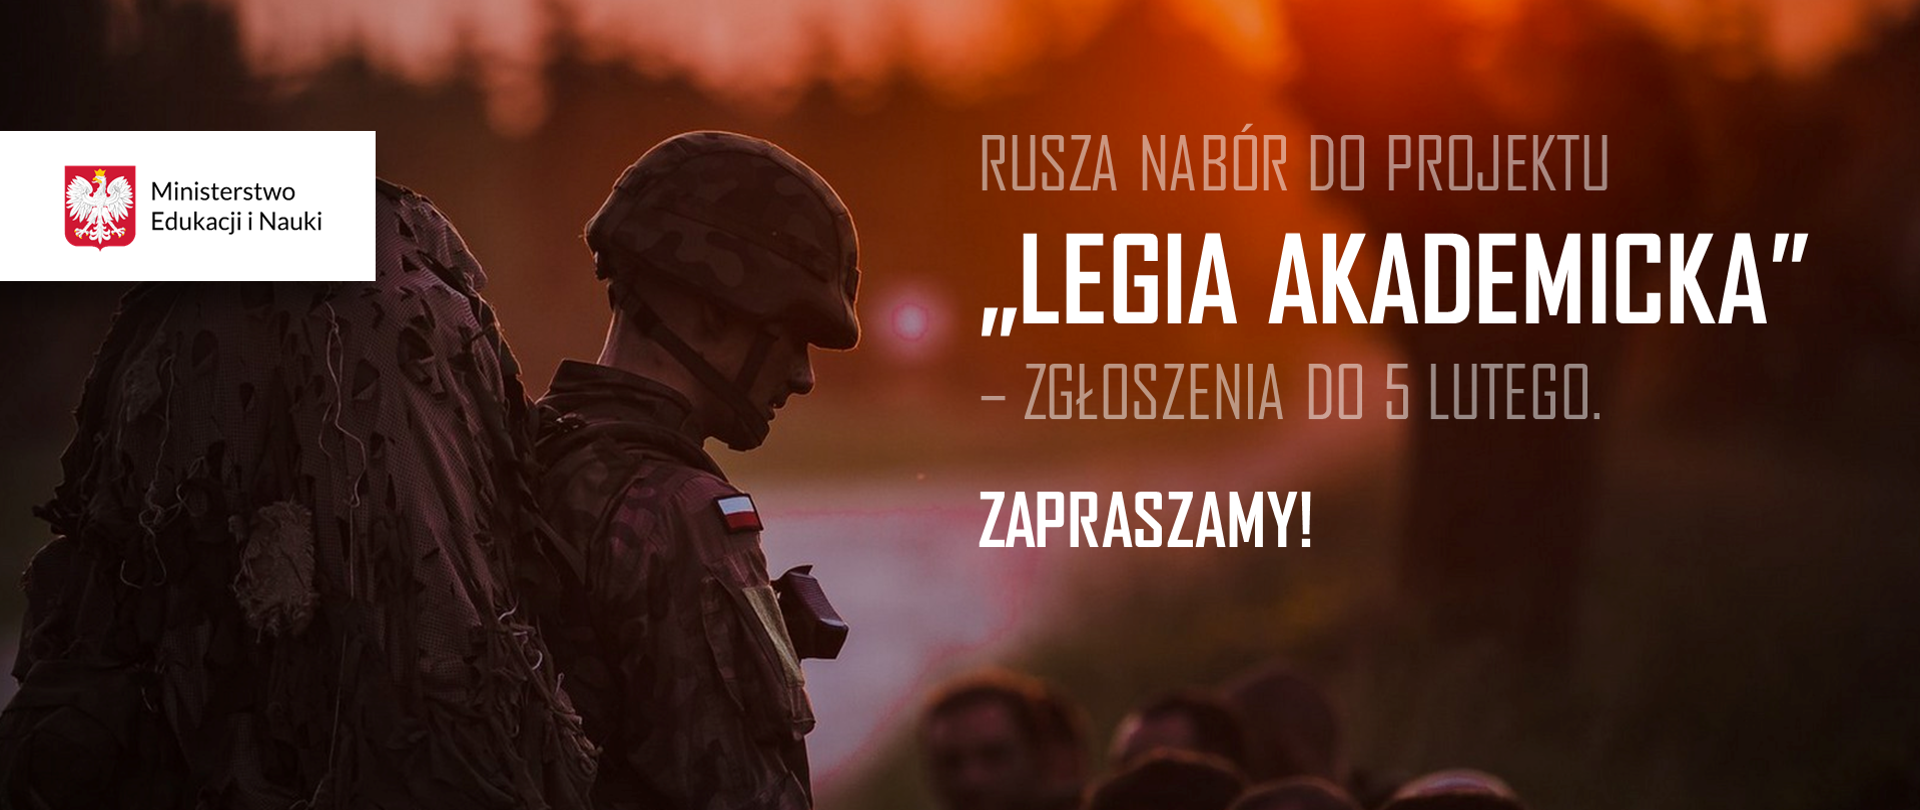 Zdjęcie polskiego żołnierza, a obok tekst: Rusza nabór do projektu "Legia Akademicka” – zgłoszenia do 5 lutego. Zapraszamy!